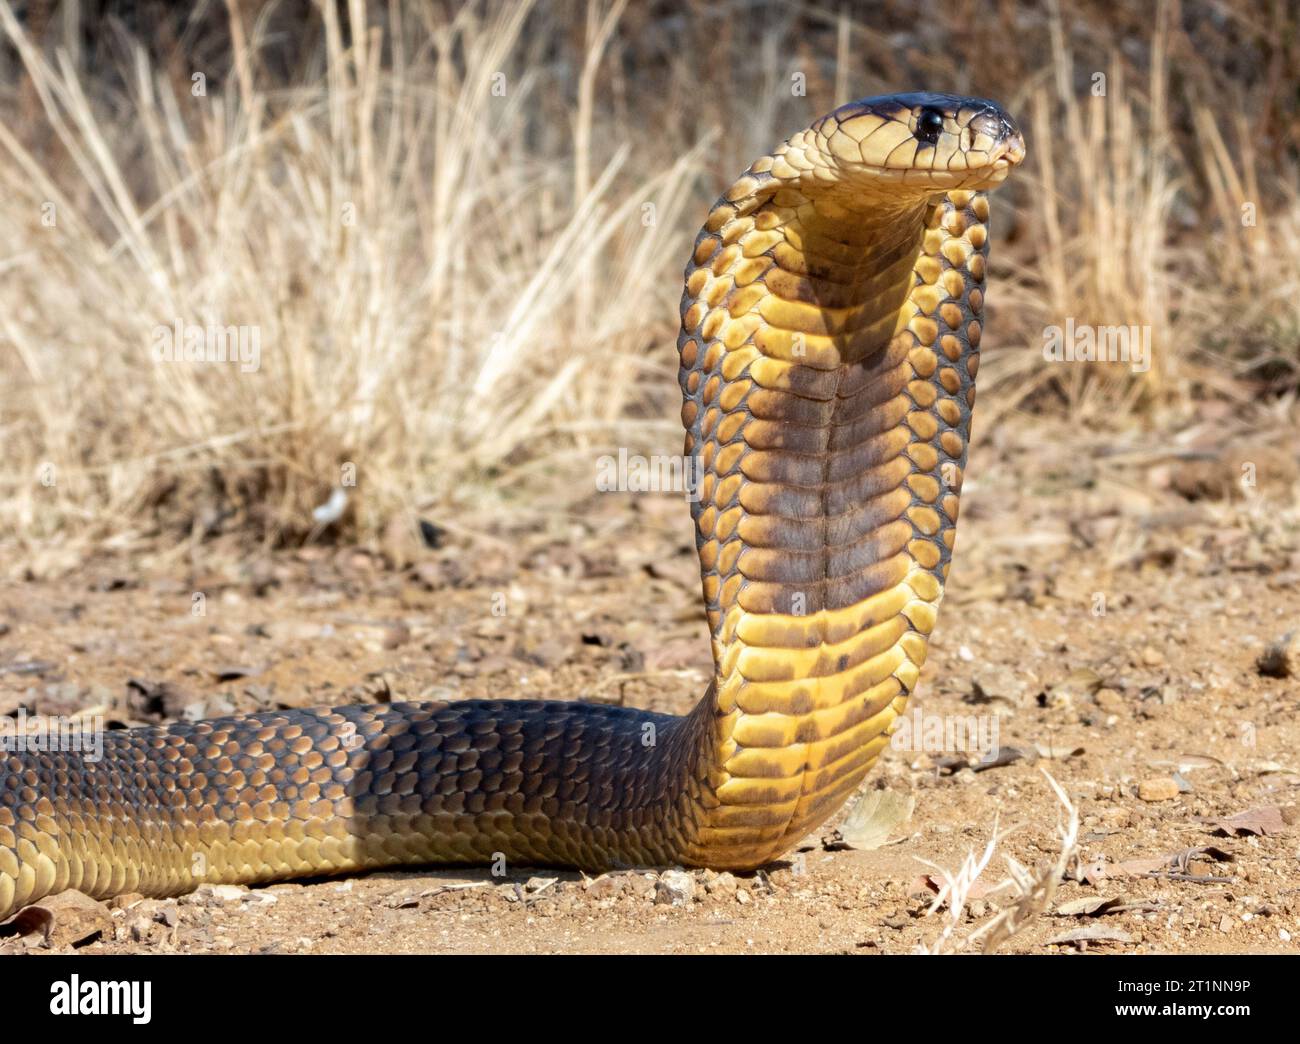 Ein Bild einer auffälligen gelben Kobra, aufgerollt mit erhobenem Kopf in einer defensiven Haltung Stockfoto